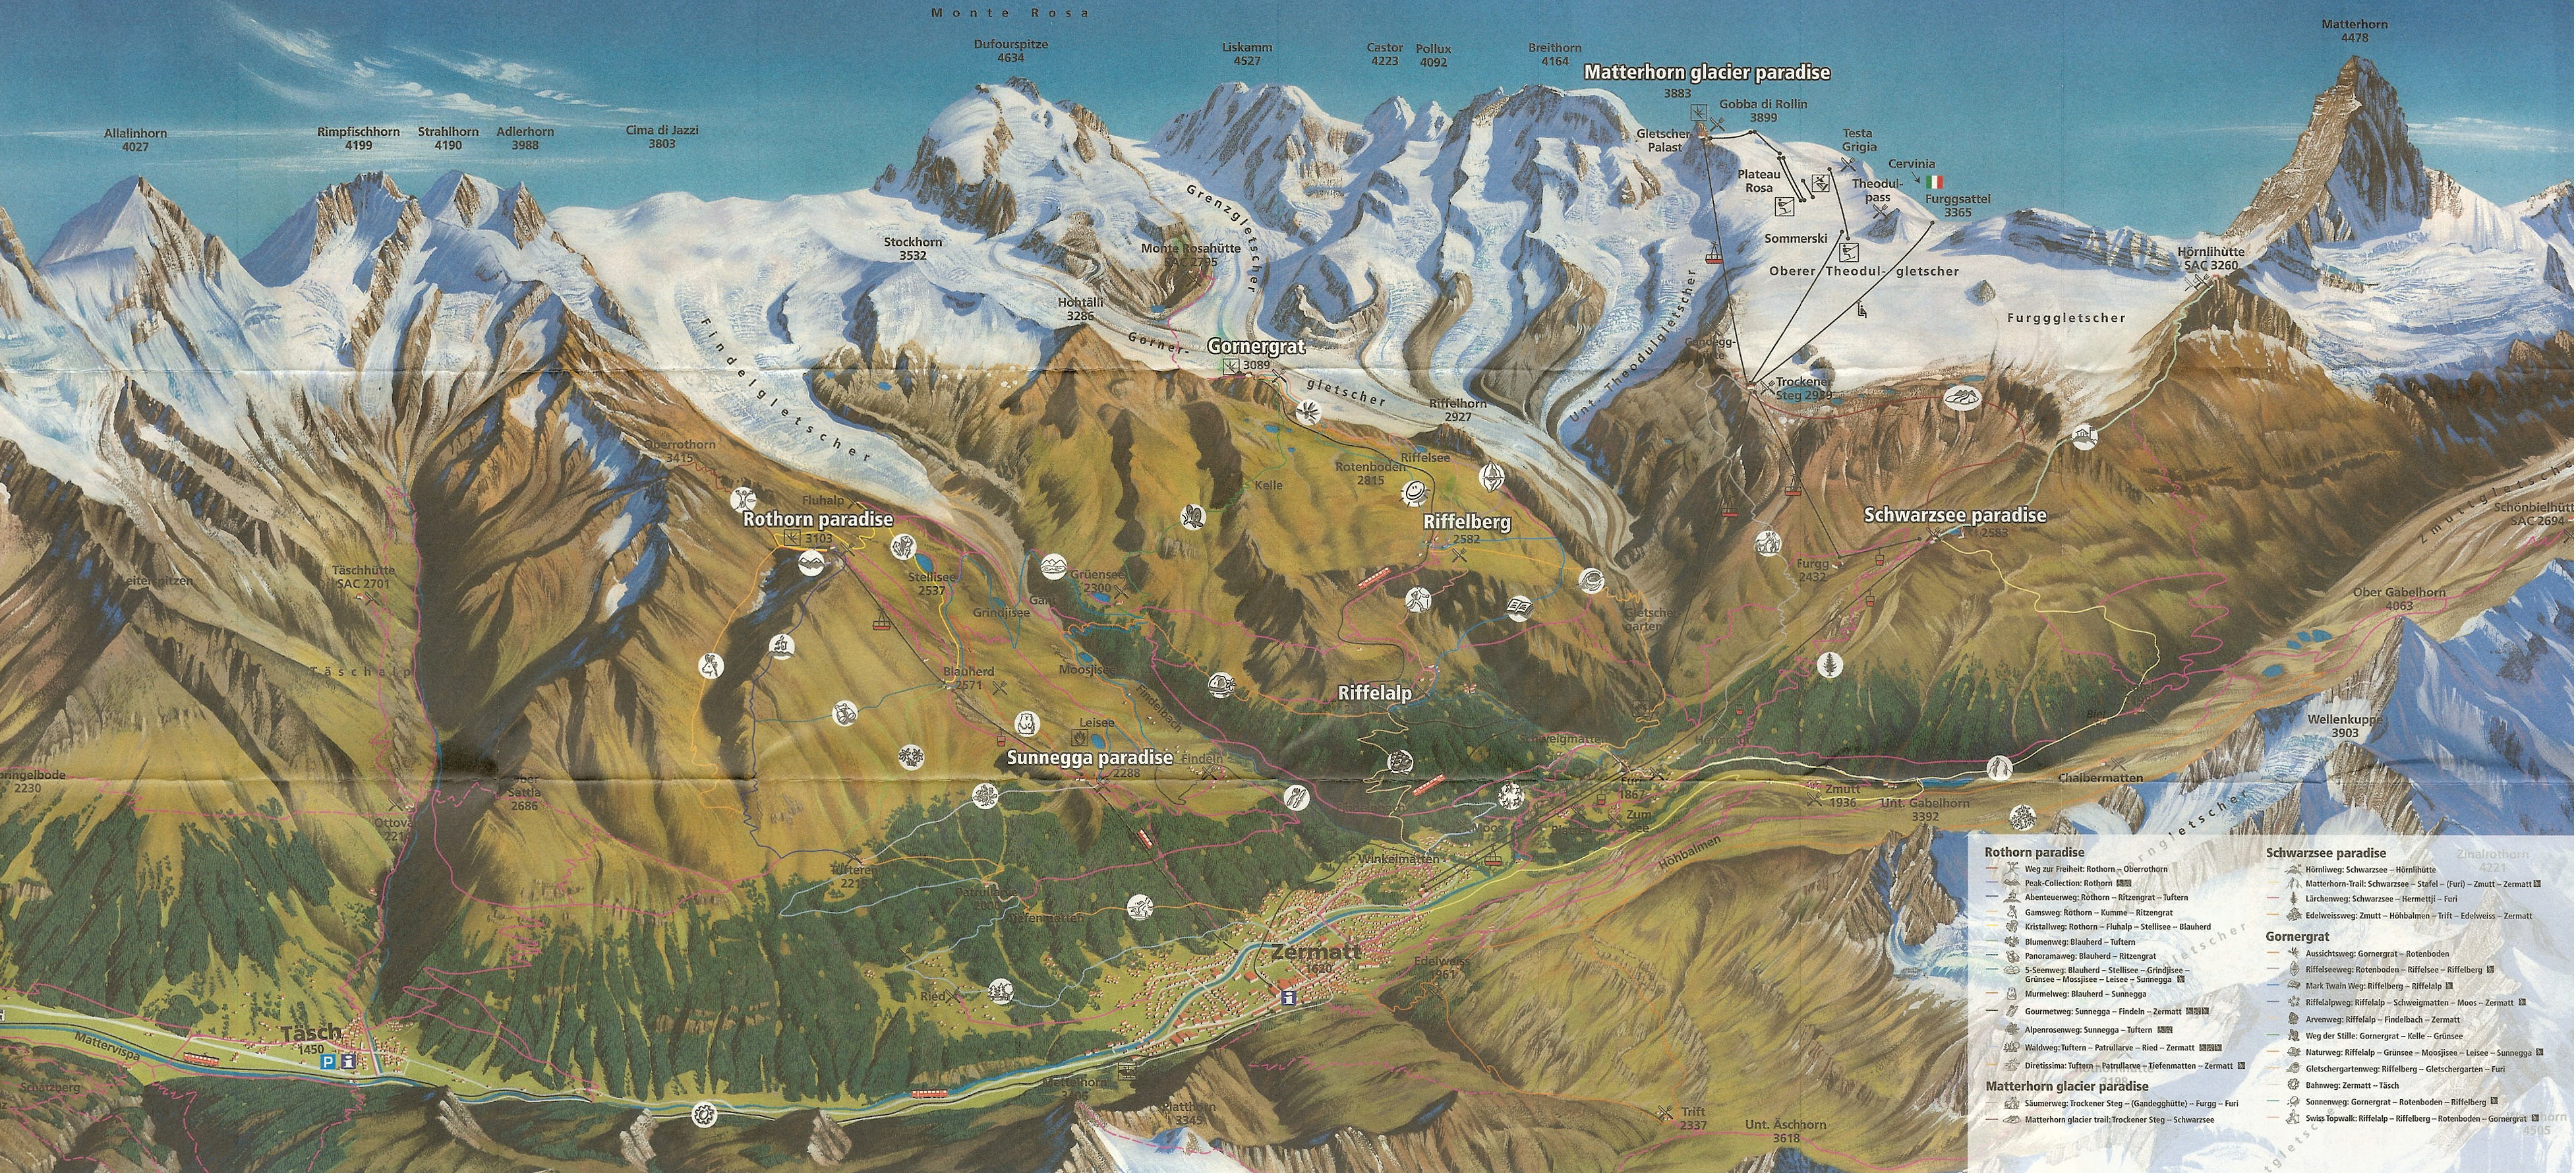 Zermatt Summer 2006 Map